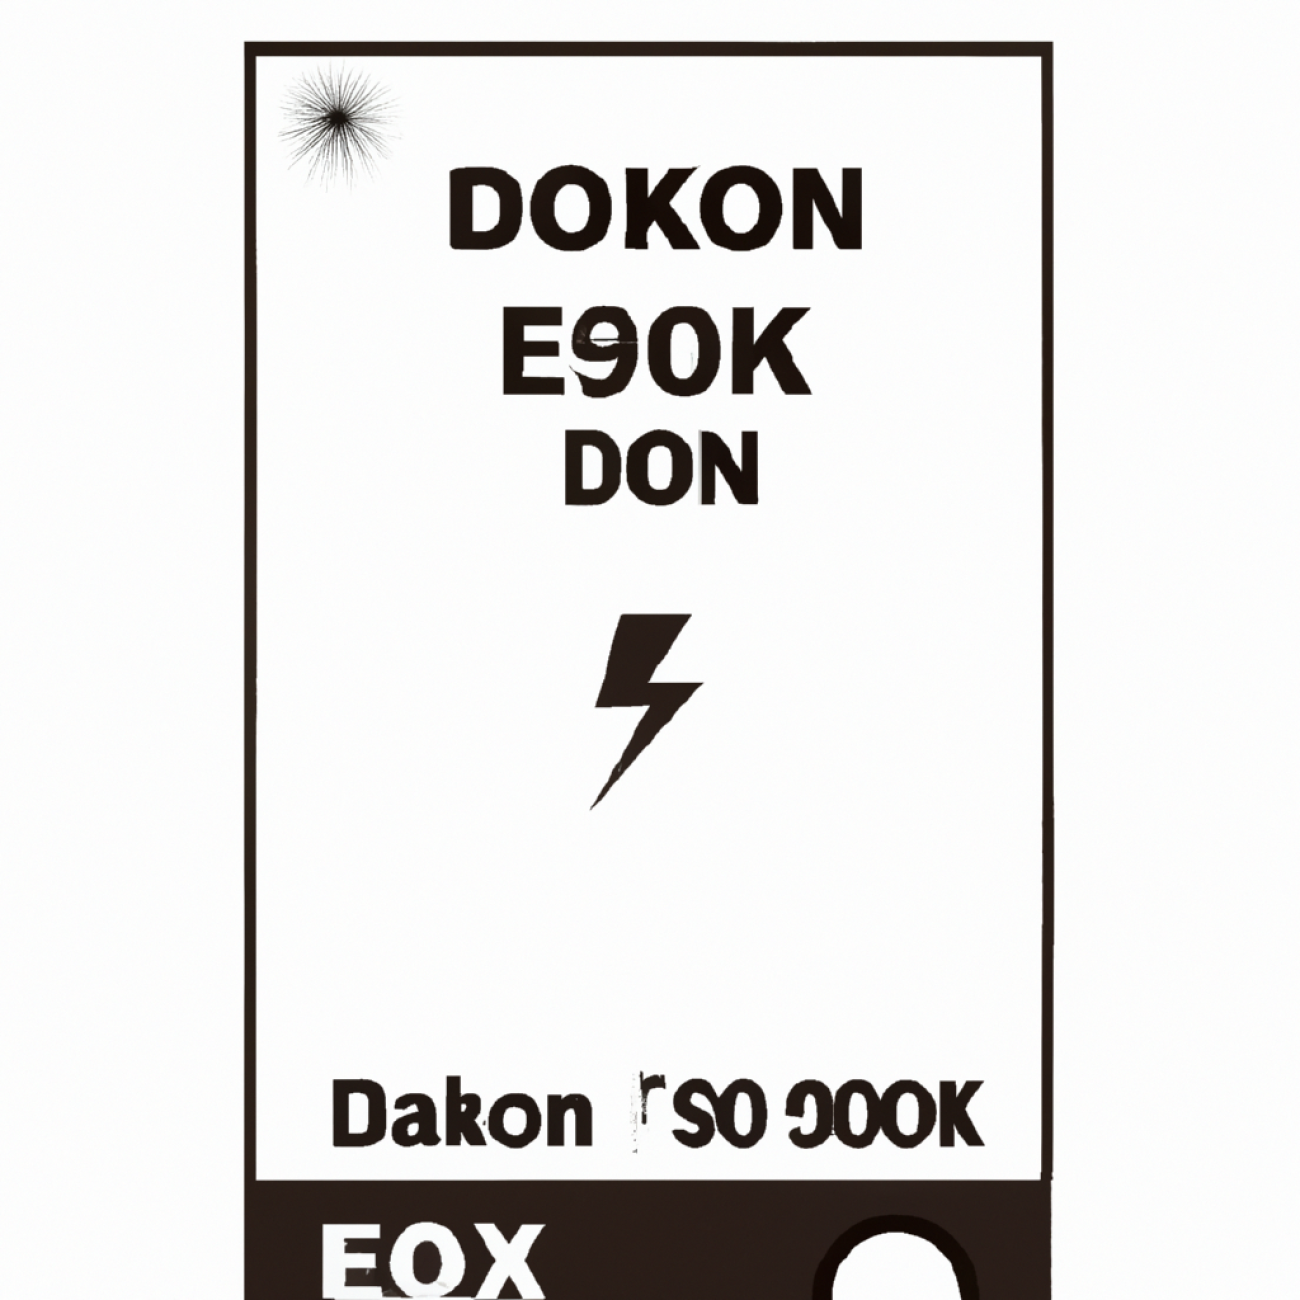 Poznávací znamení kvalitního elektrokotle Dakon o výkonu 20 kW pro vaše potřeby